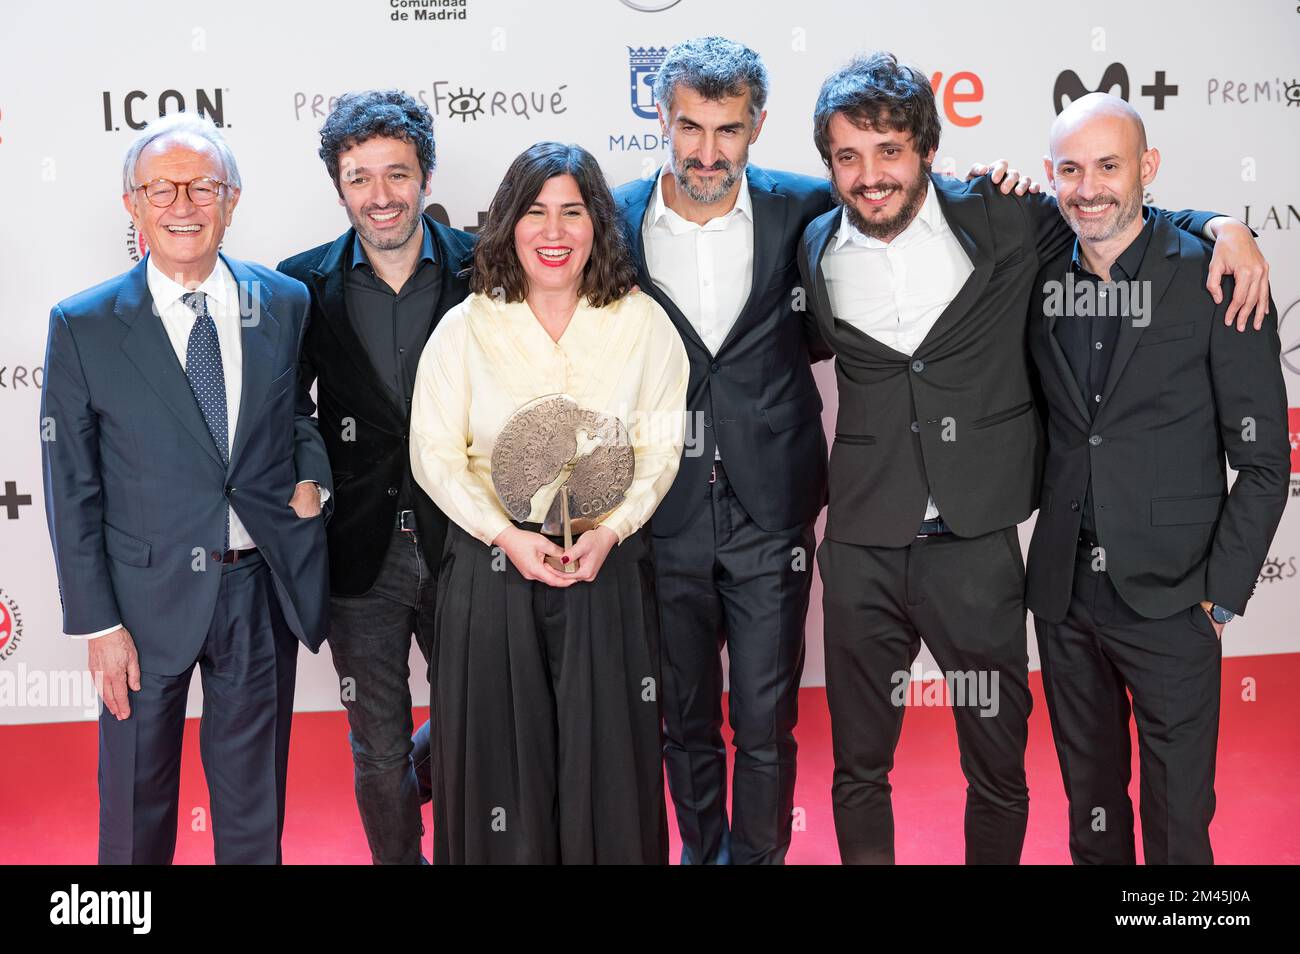 Premios Jose María Forqué, edición 28. Celebrados el 17 de diciembre de 2022 en Madrid, Ifema. Mejor largometraje de ficción o animación, as Bestas. Stockfoto